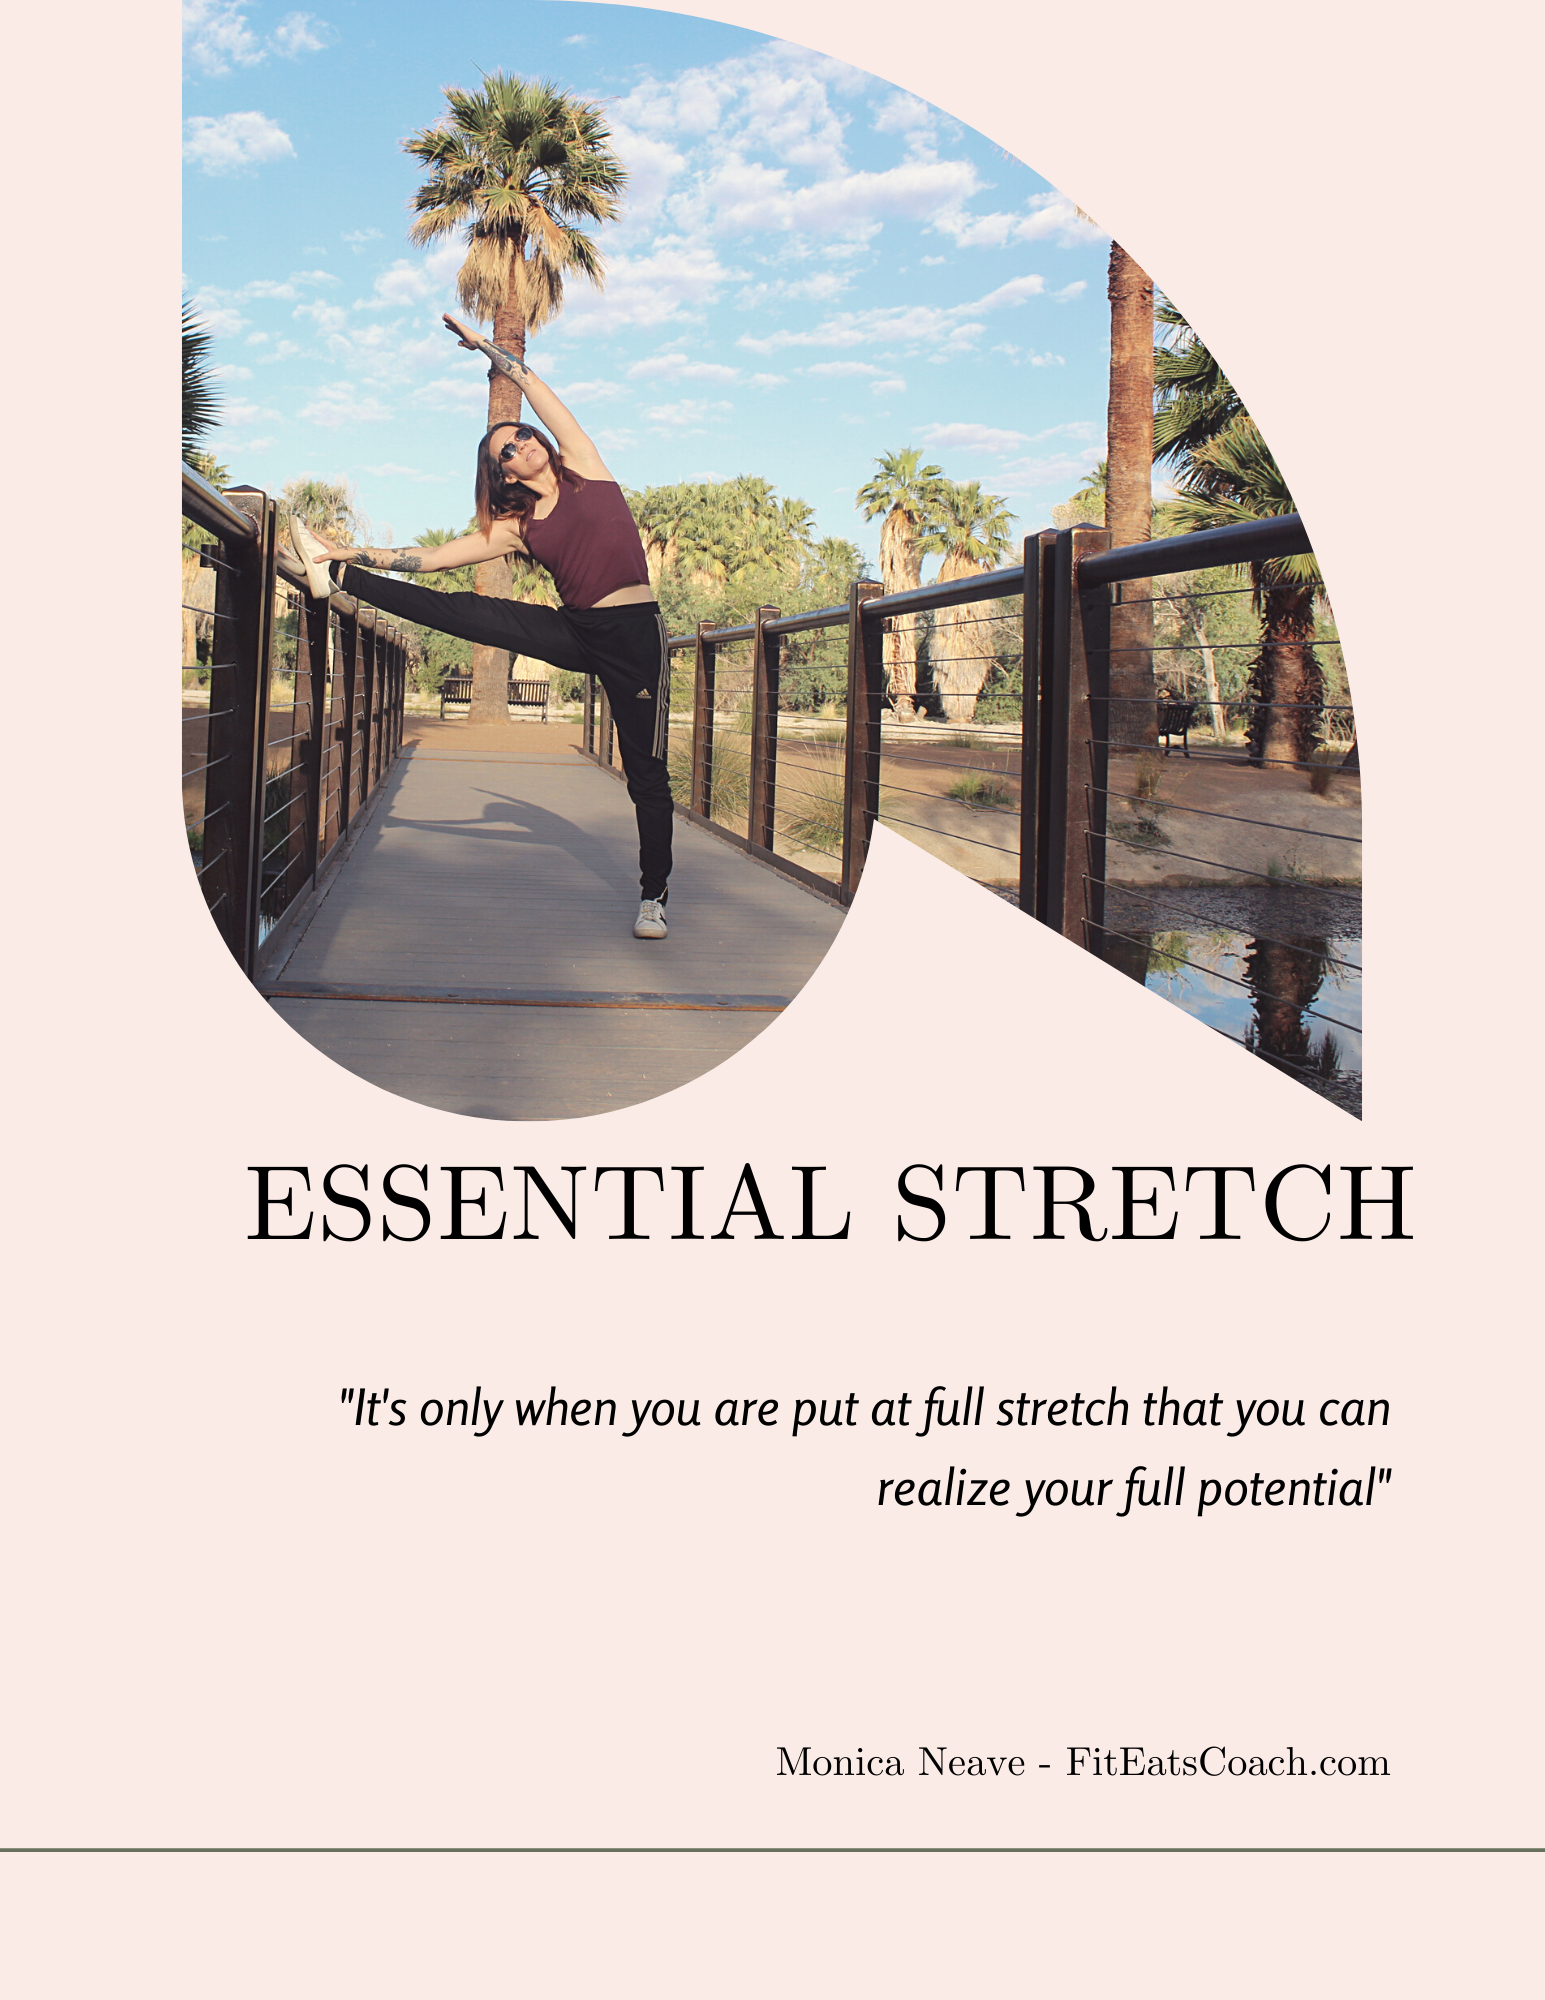 Essential Stretch Plan